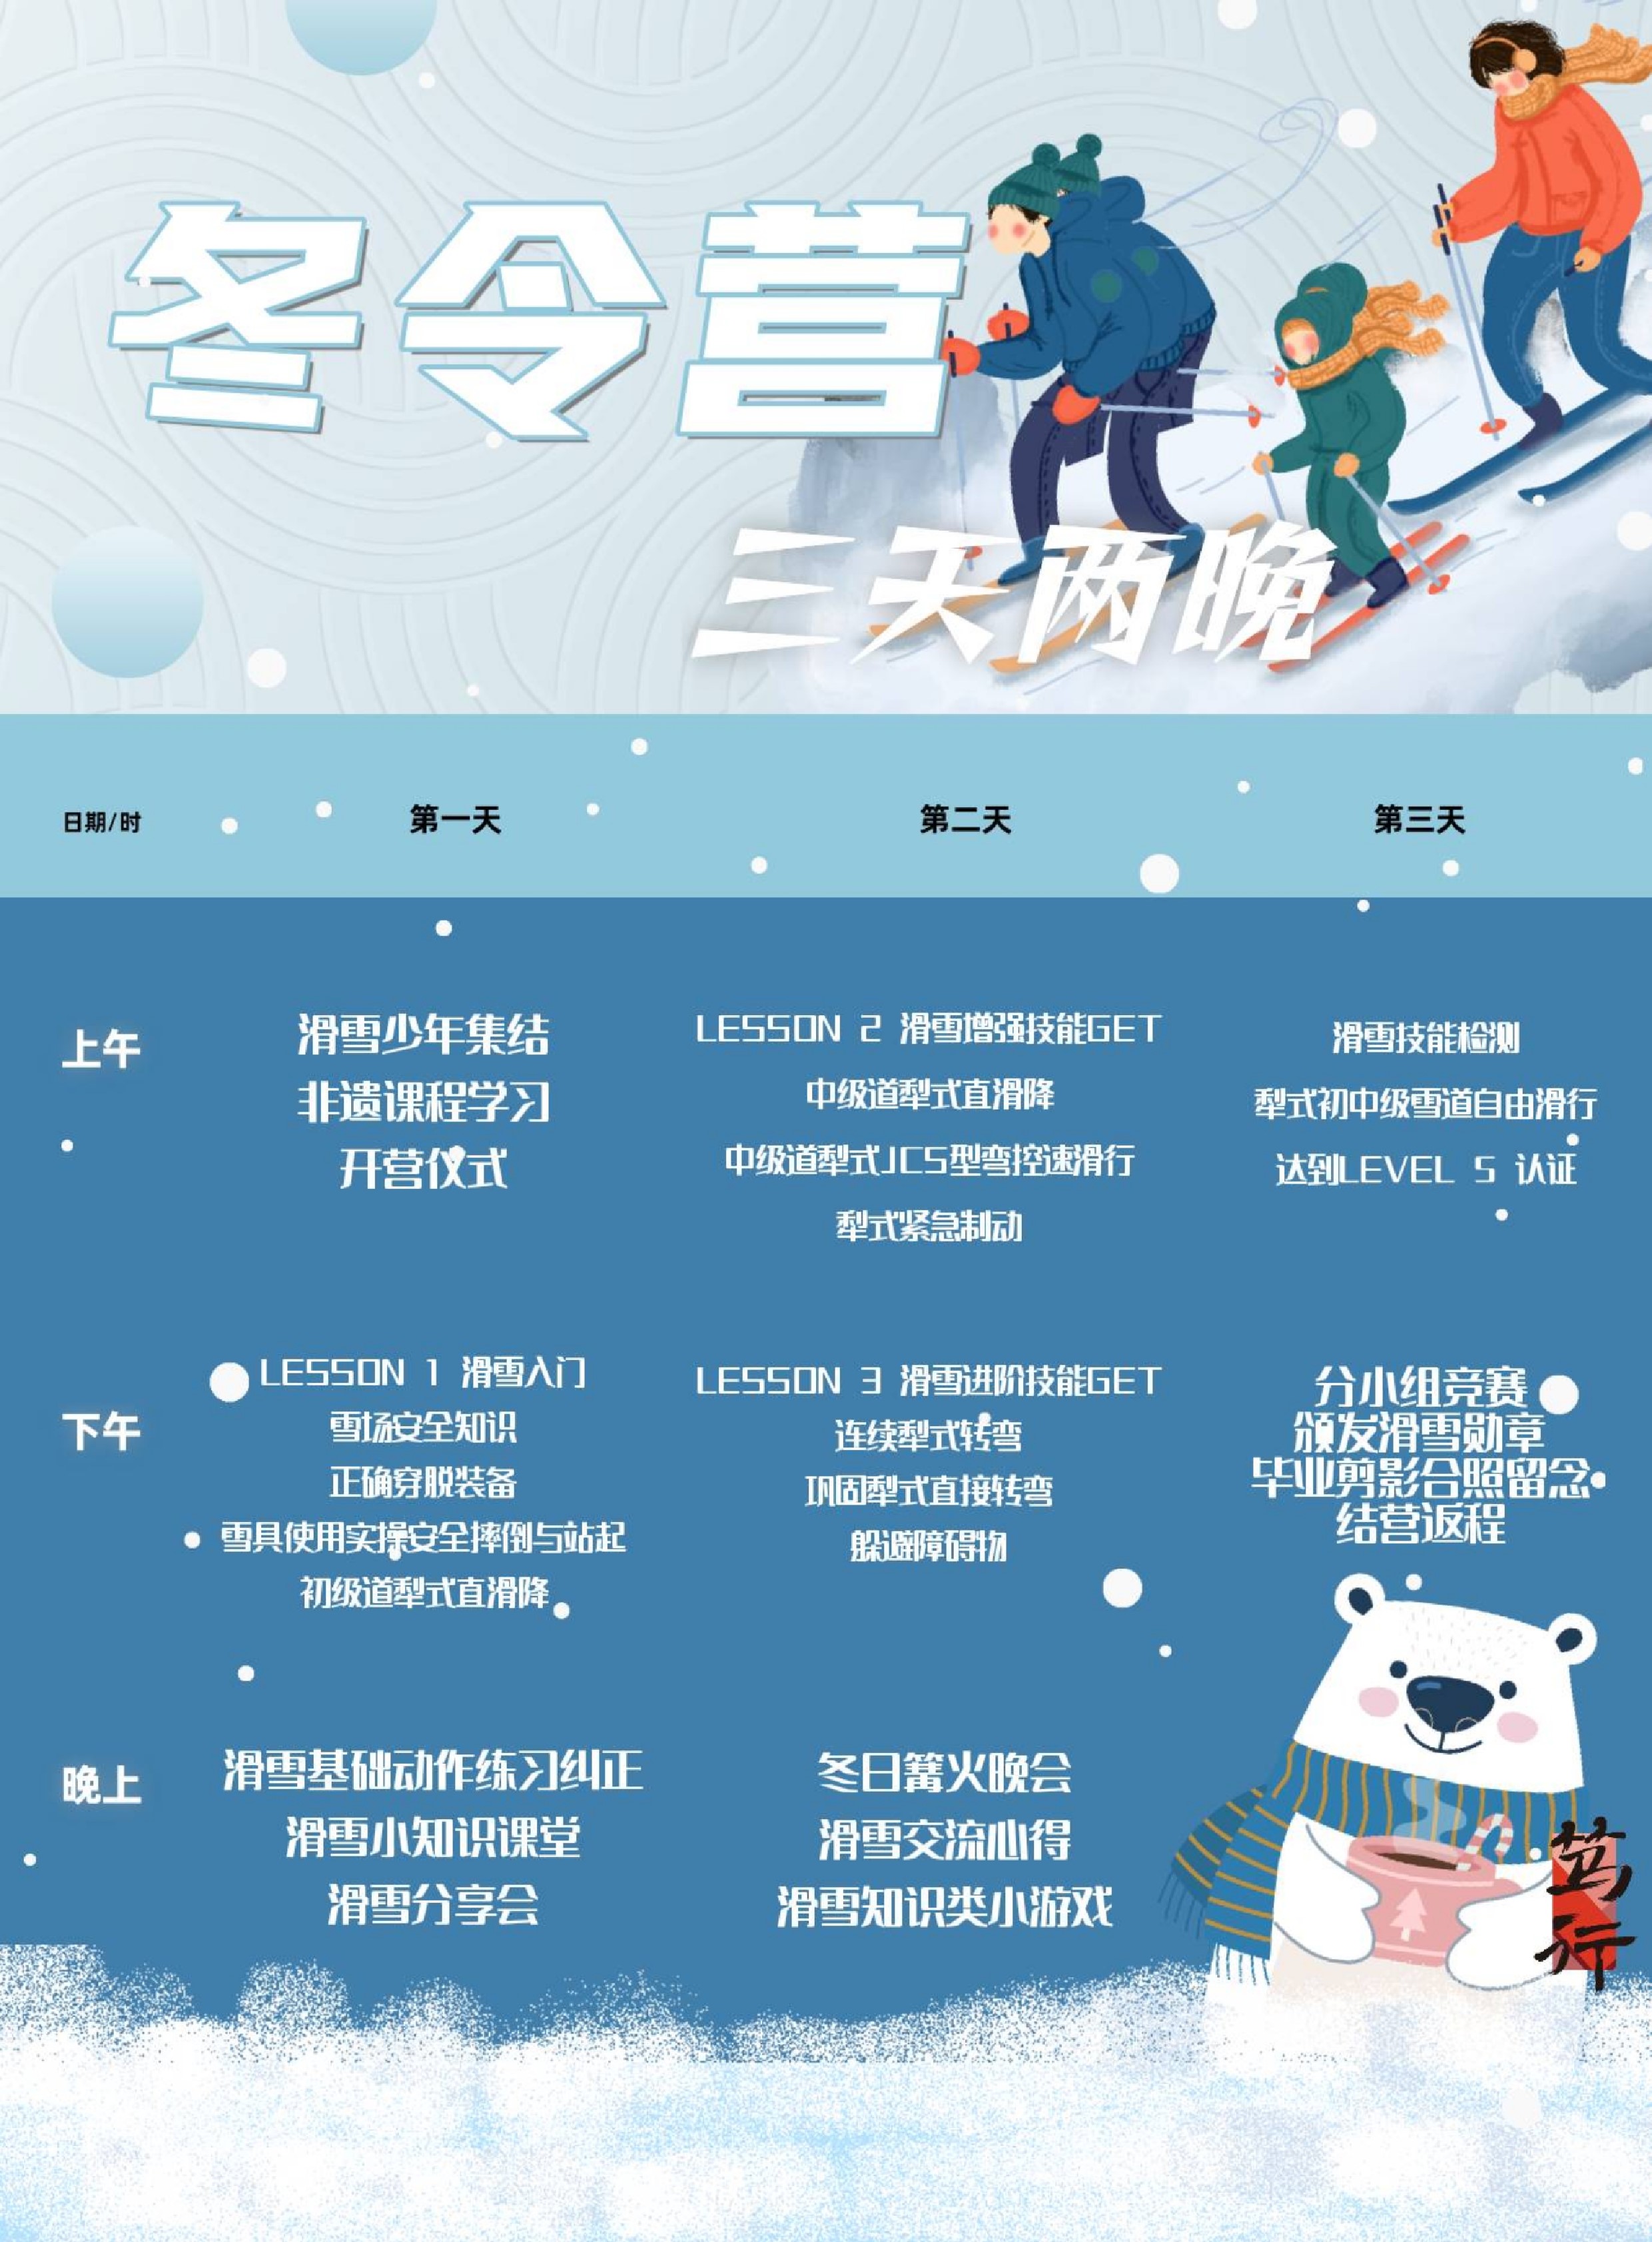 赶紧保存！杭州儿童滑雪冬令营价格公布啦！